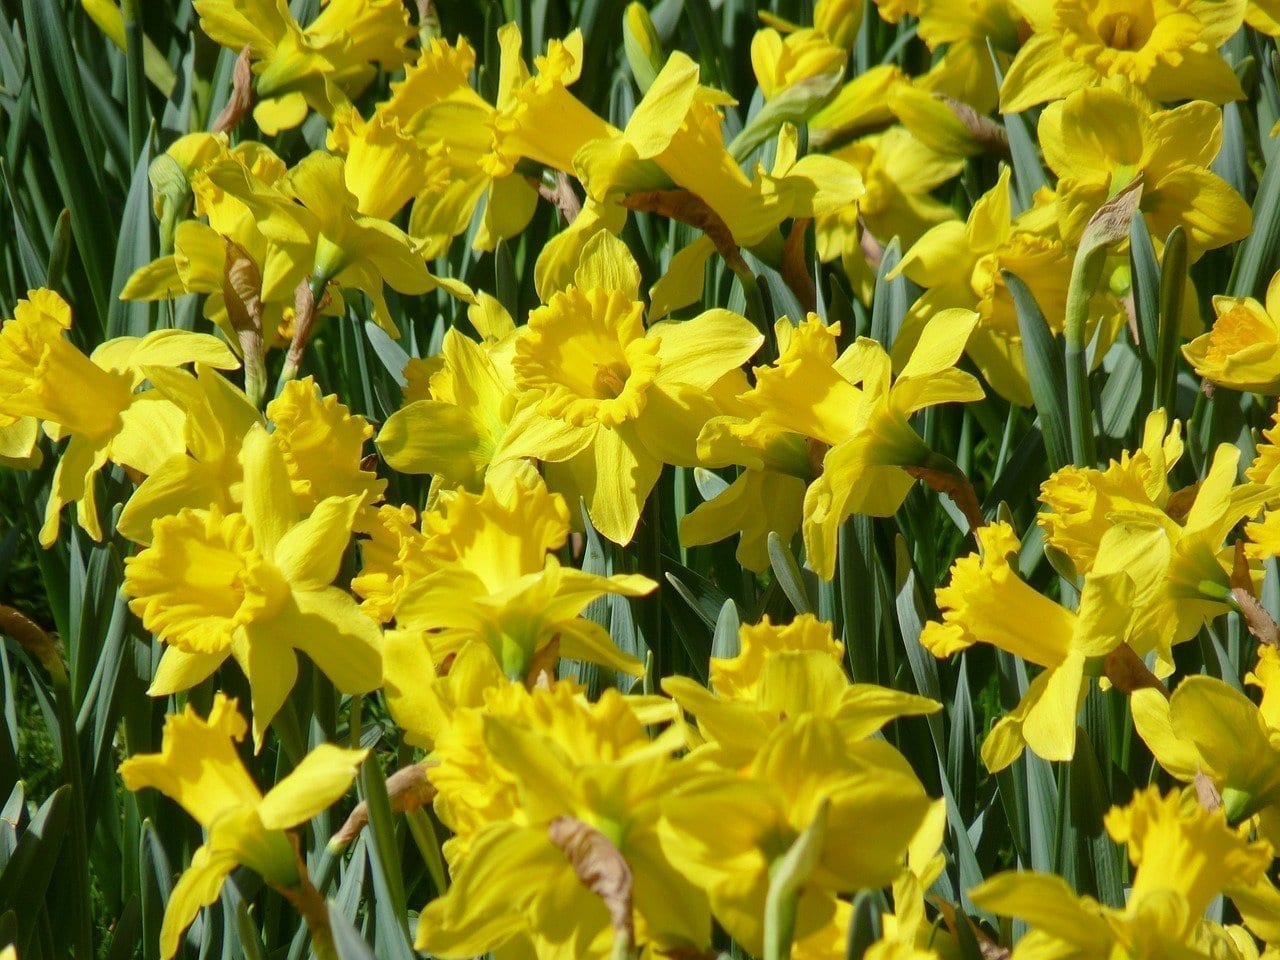 威尔士国花 金黄明艳的黄水仙 英国国花系列文章